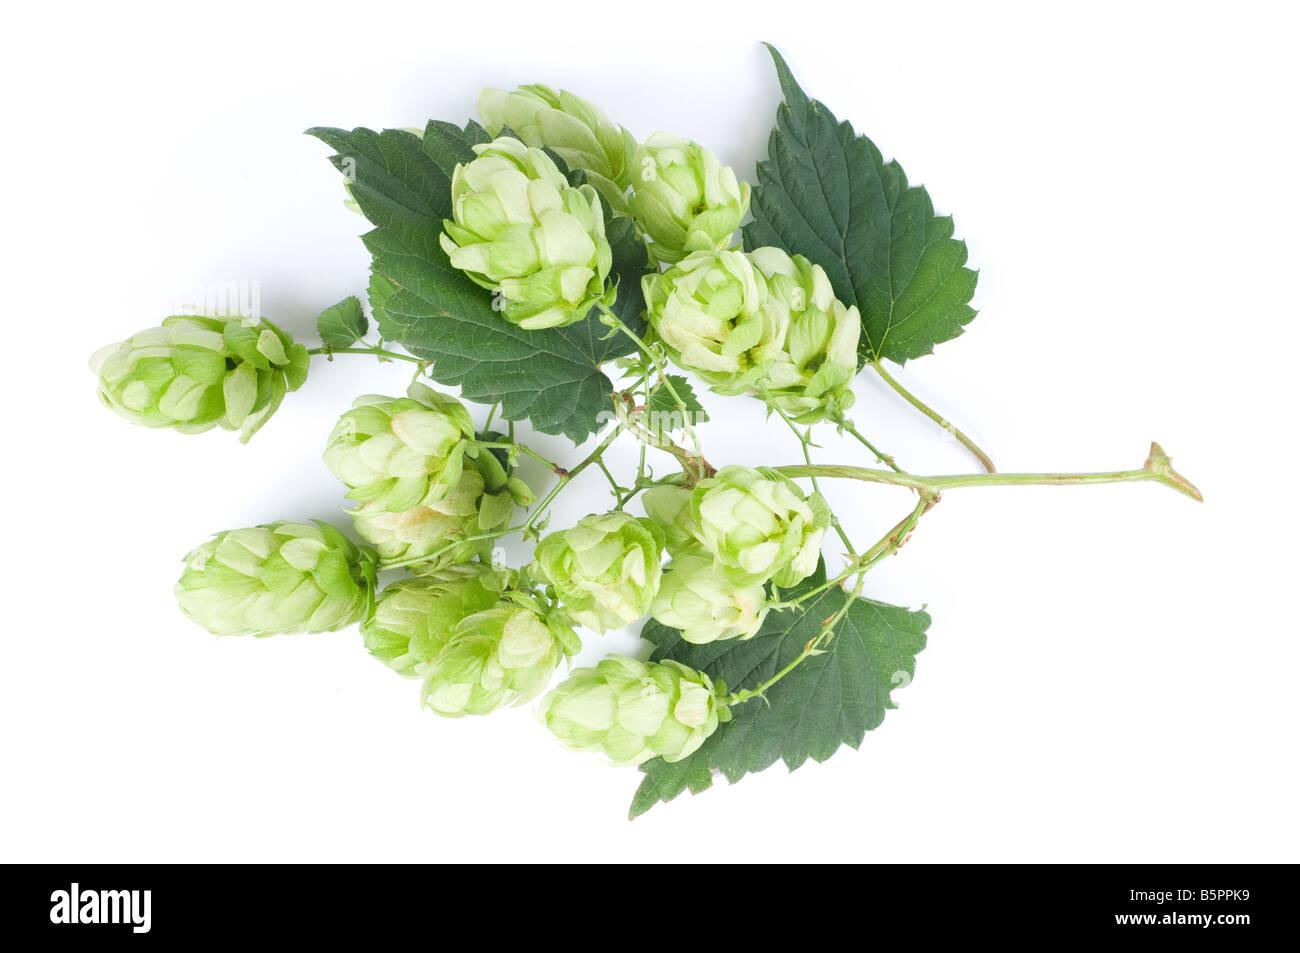 Fresh green hops - Humulus lupulus - on white background. Stock Photo